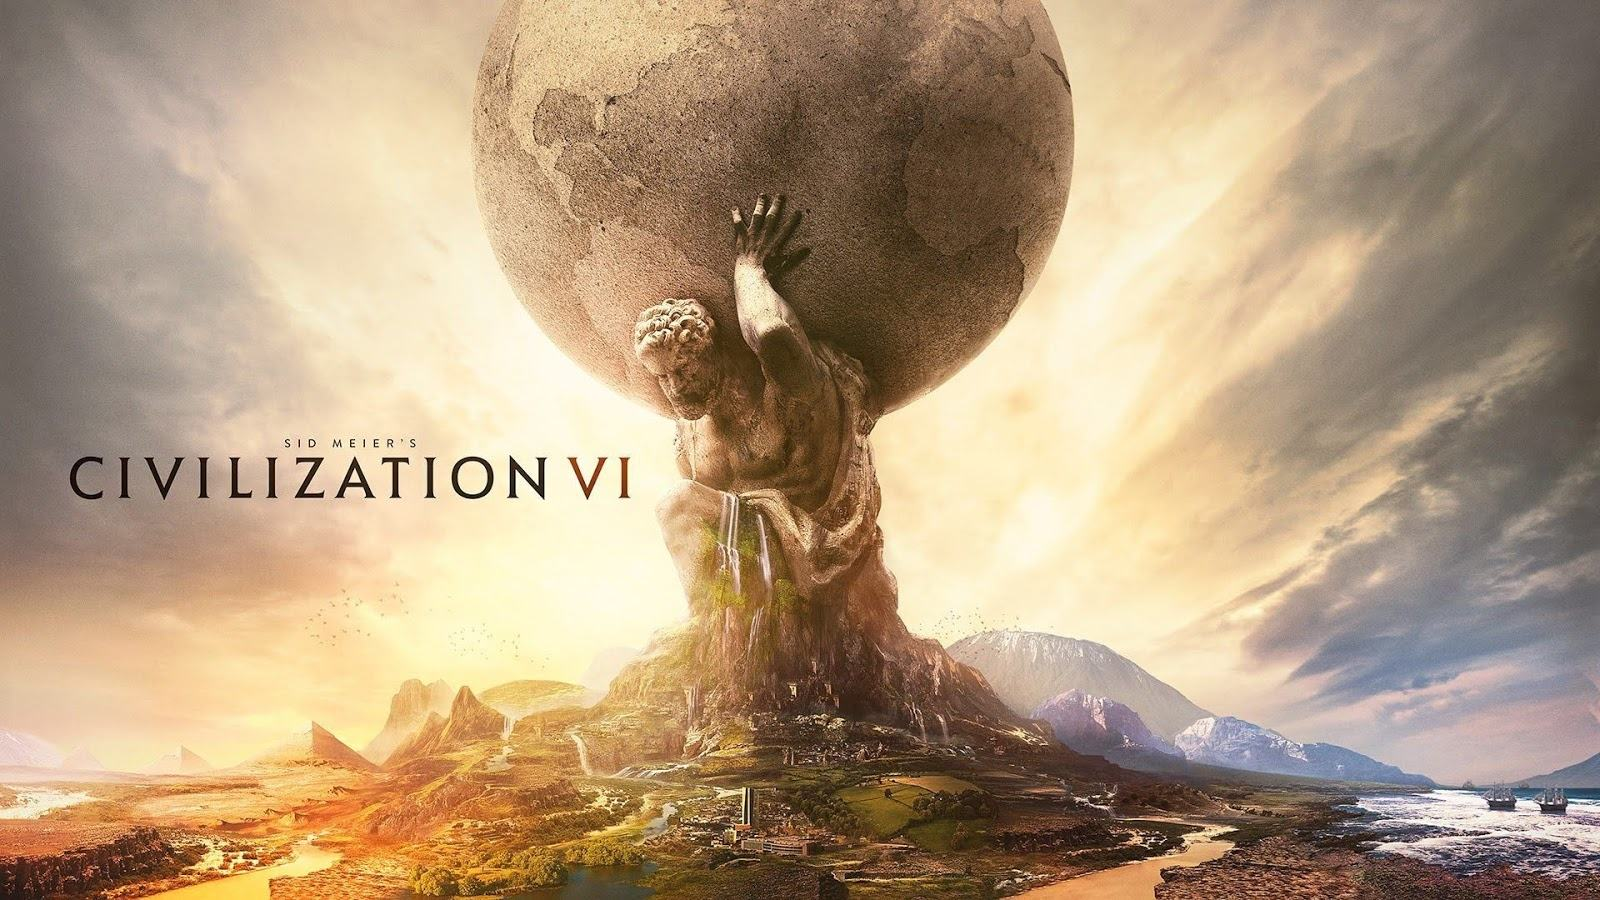 Nhanh tay sở hữu siêu phẩm game chiến thuật Civilization 6 trên Steam với giá chỉ 35.000 VND